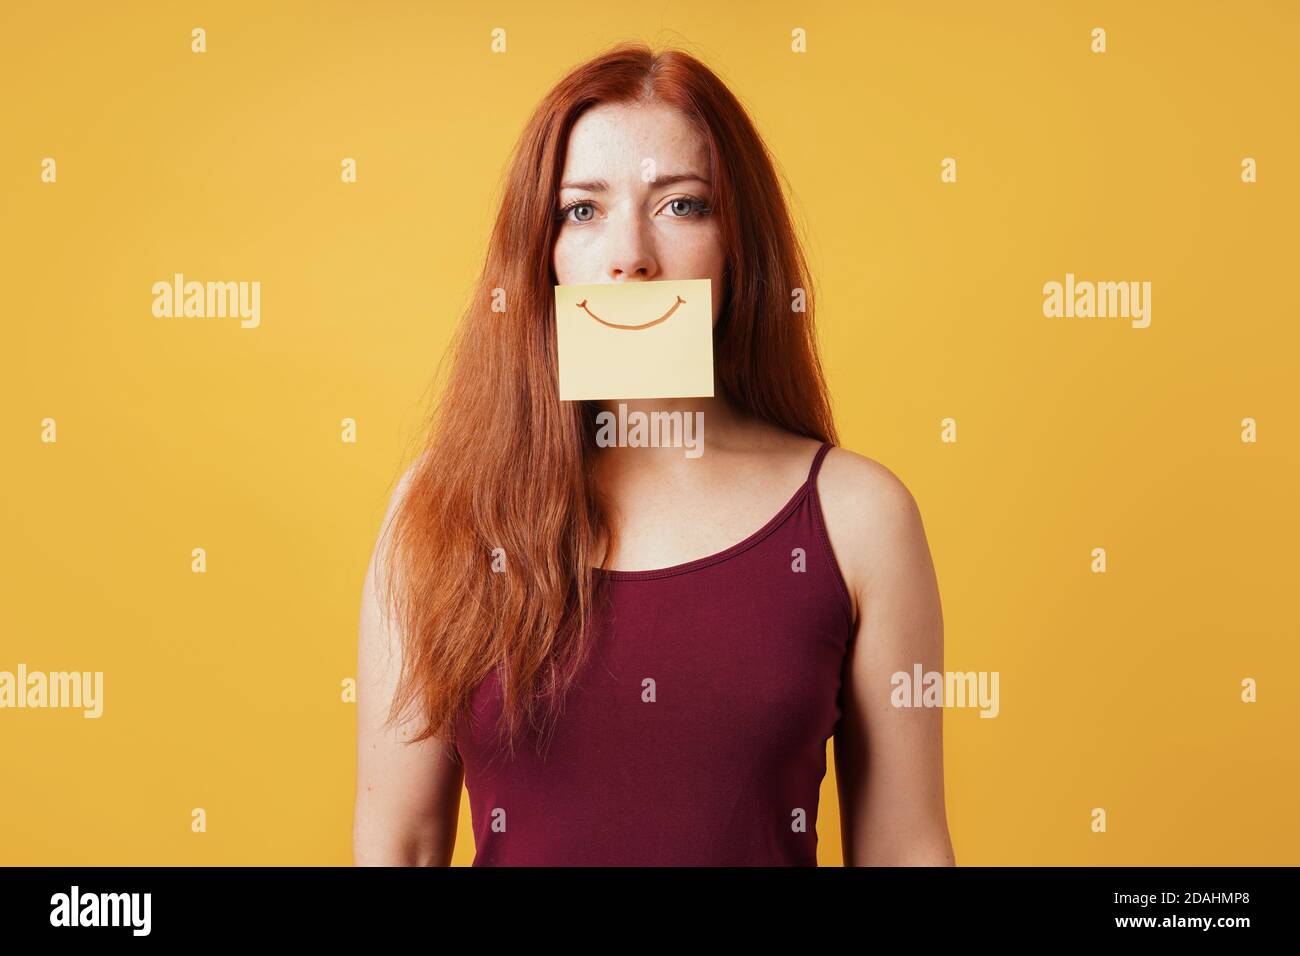 giovane donna che nasconde tristezza o depressione dietro falso sorriso disegnato su carta gialla Foto Stock